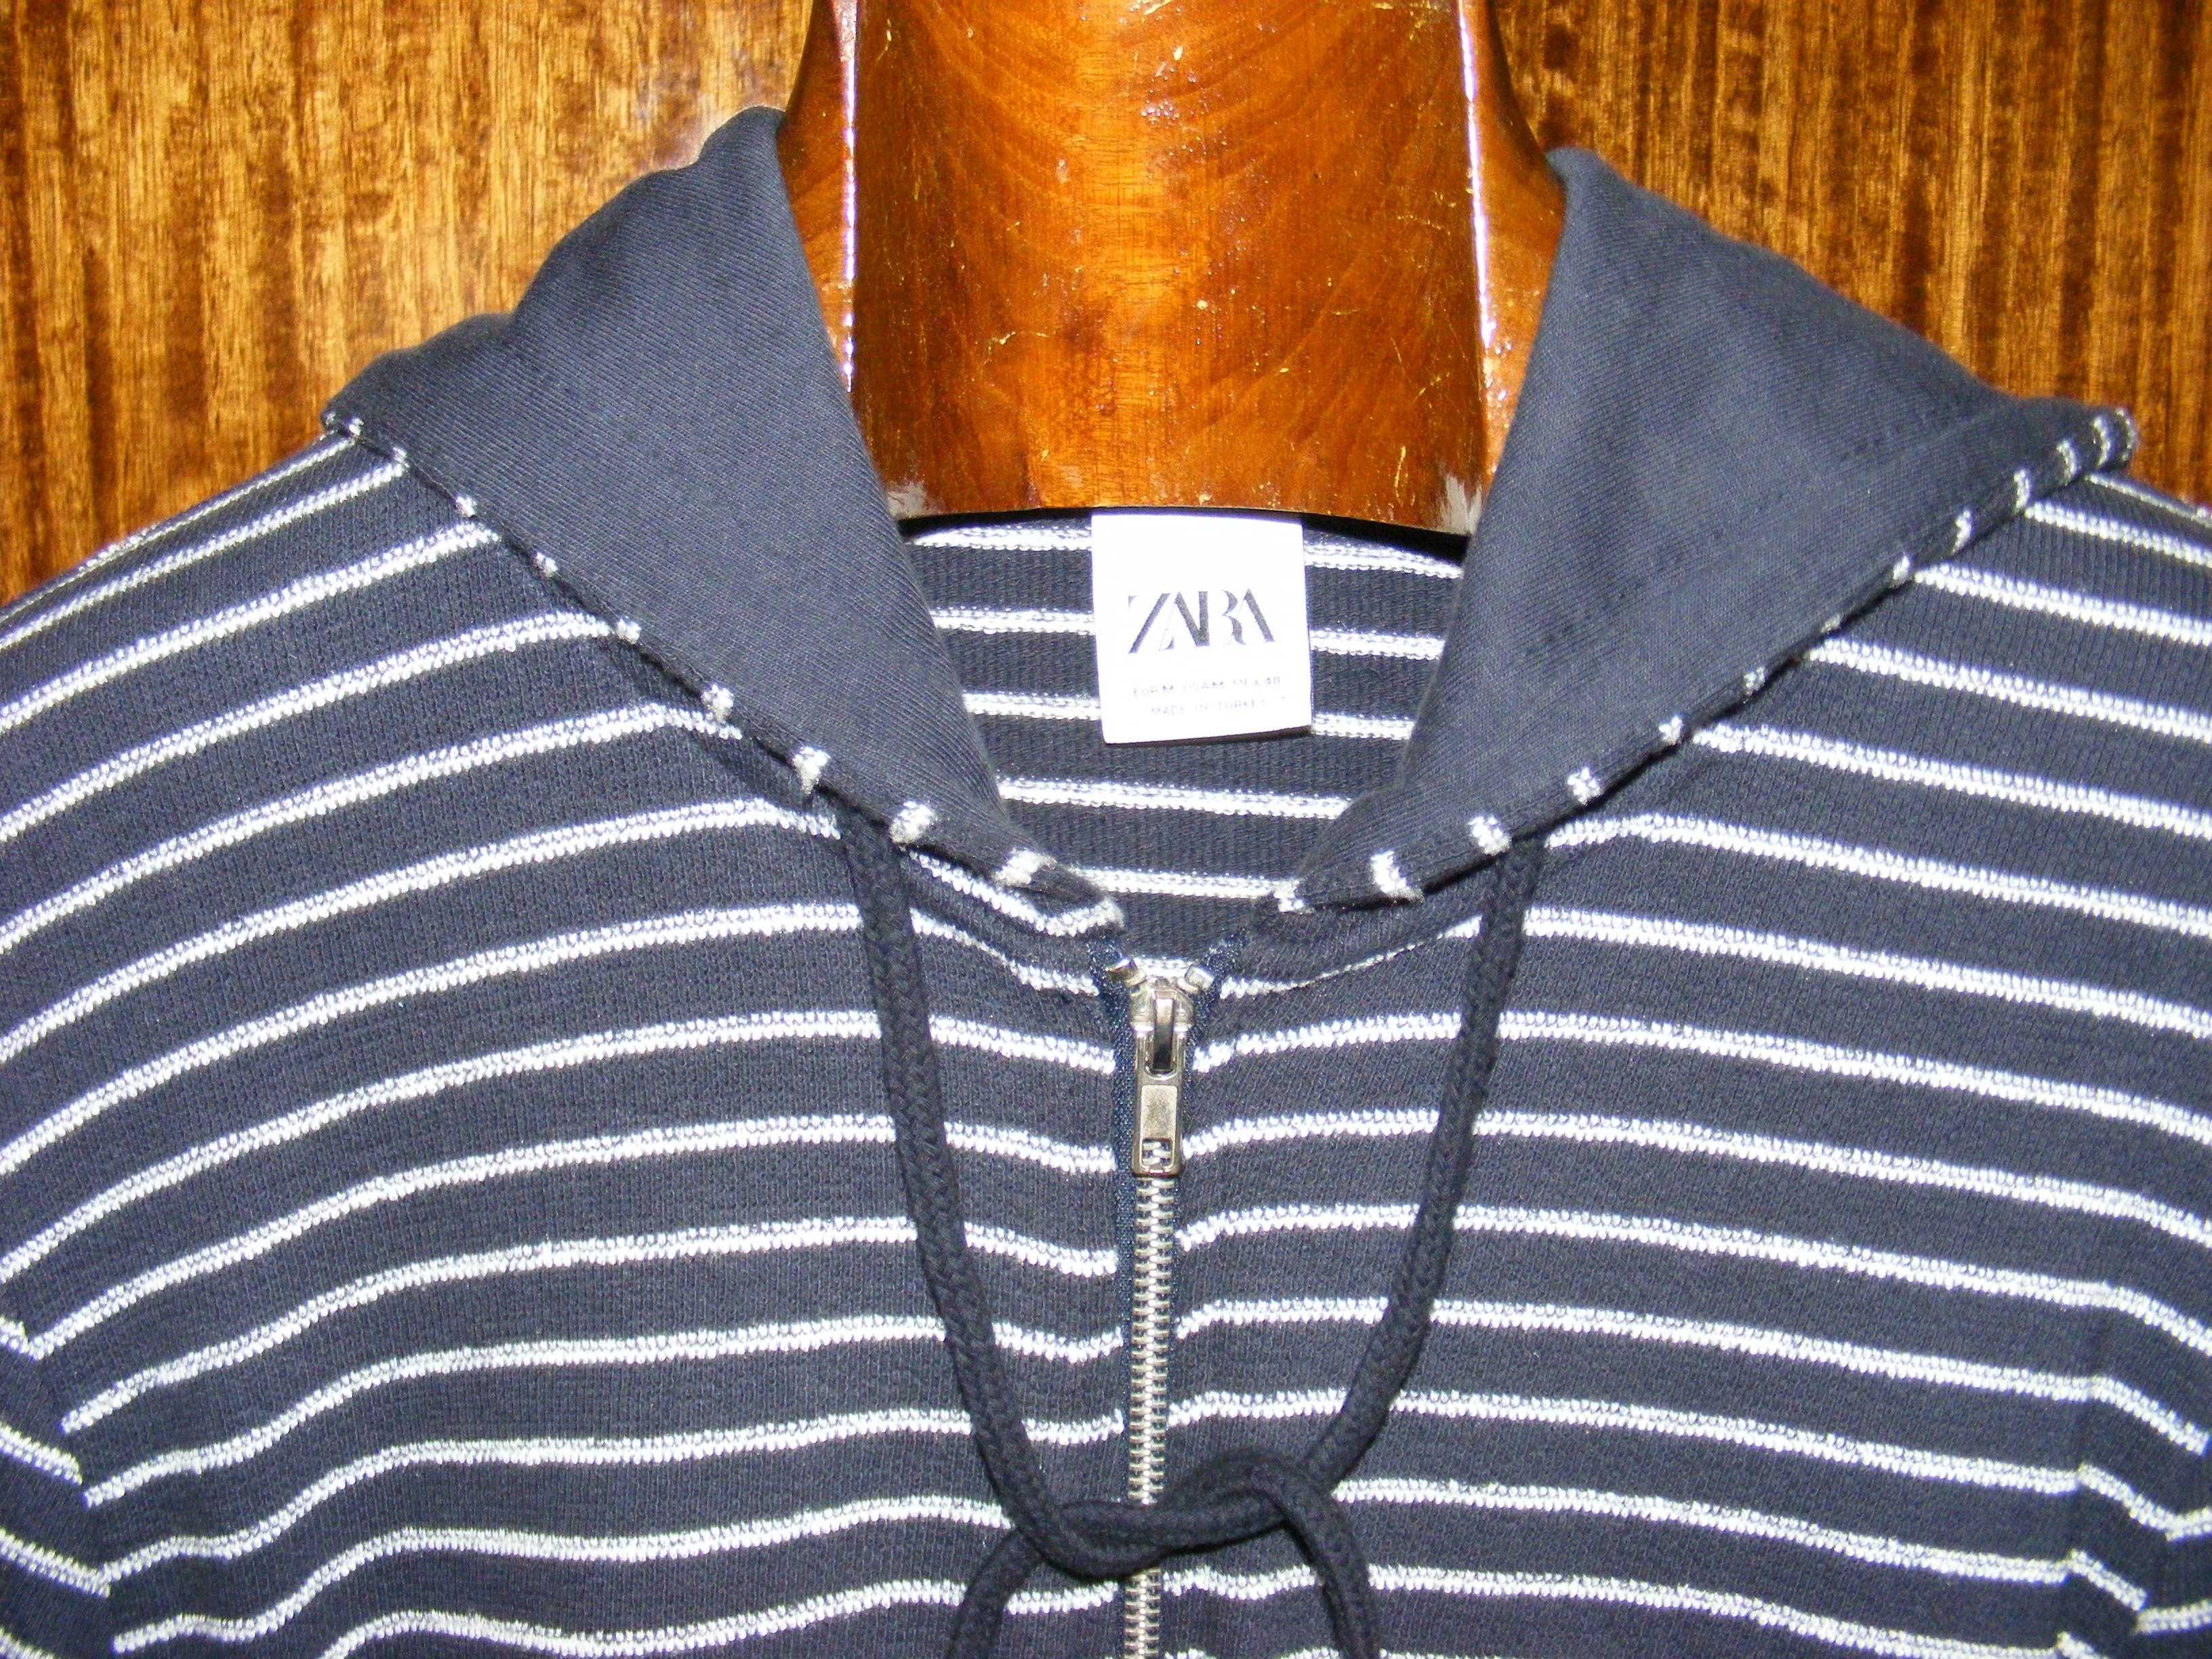 Blusão, pulôver e camisolas (Zara, Marlboro, Hollister)